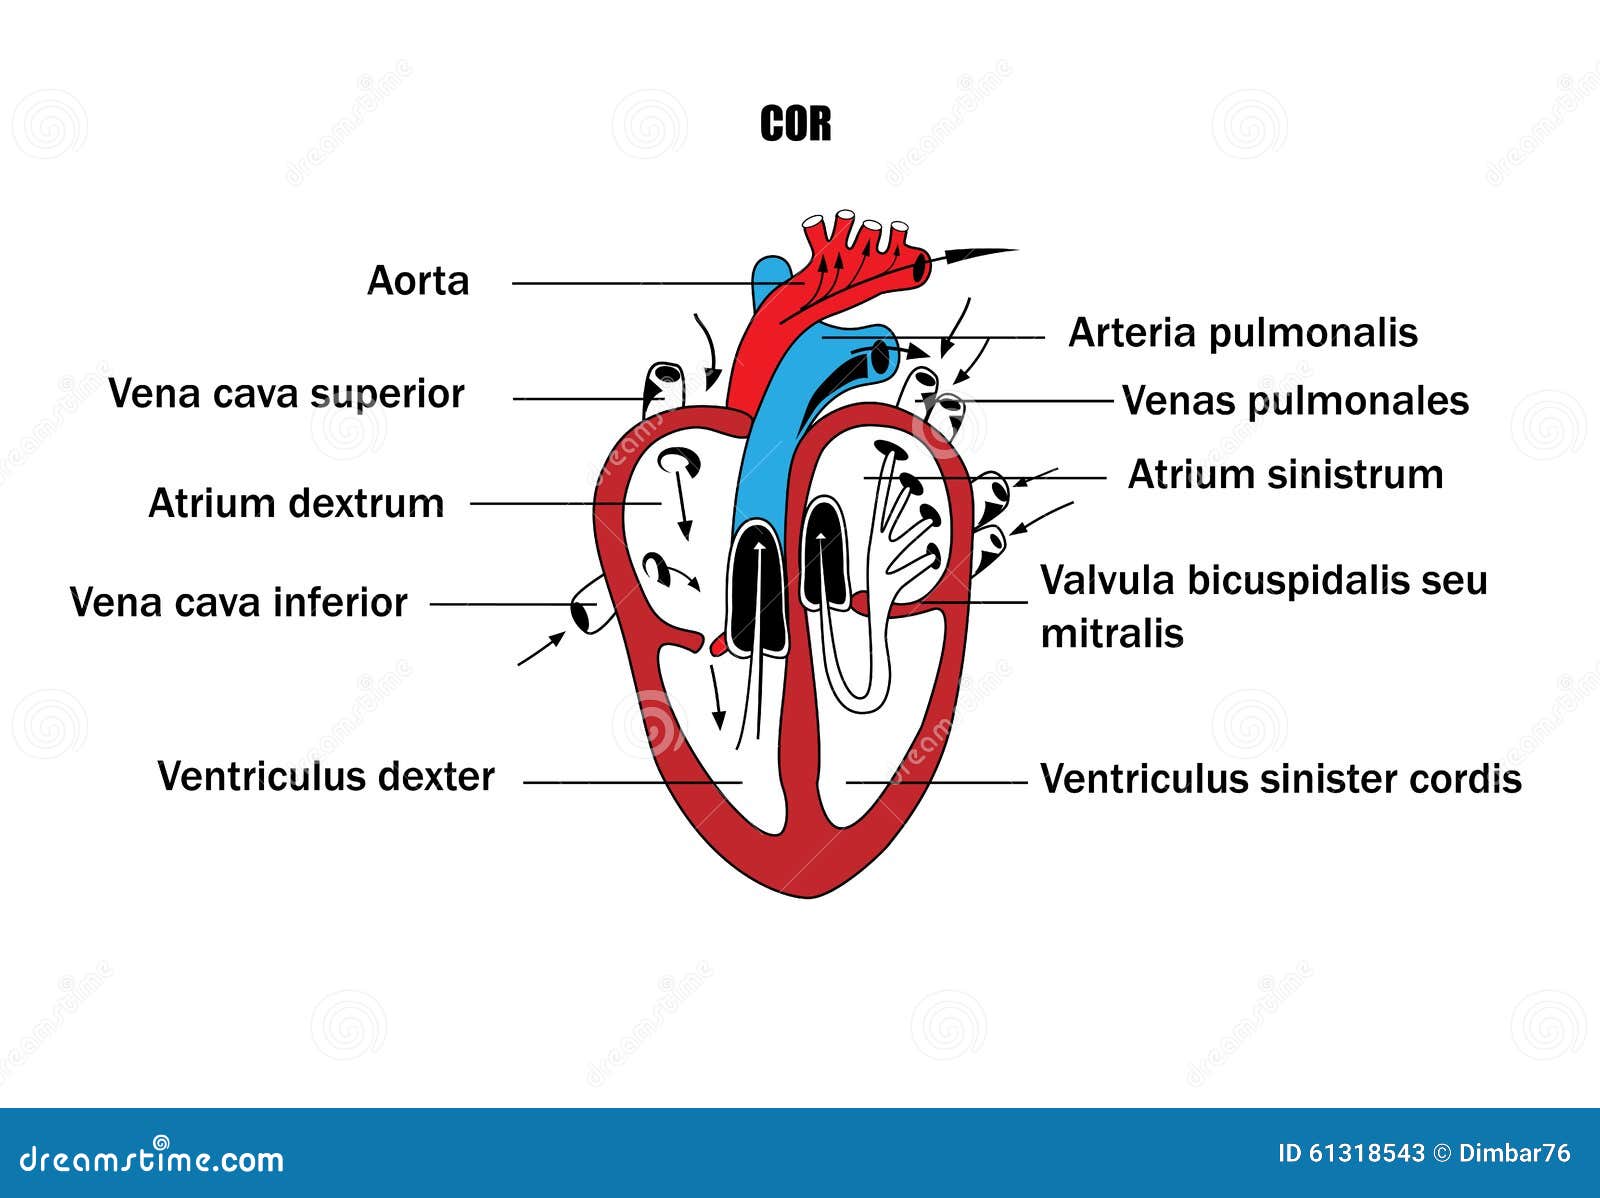 arteria pulmonalis